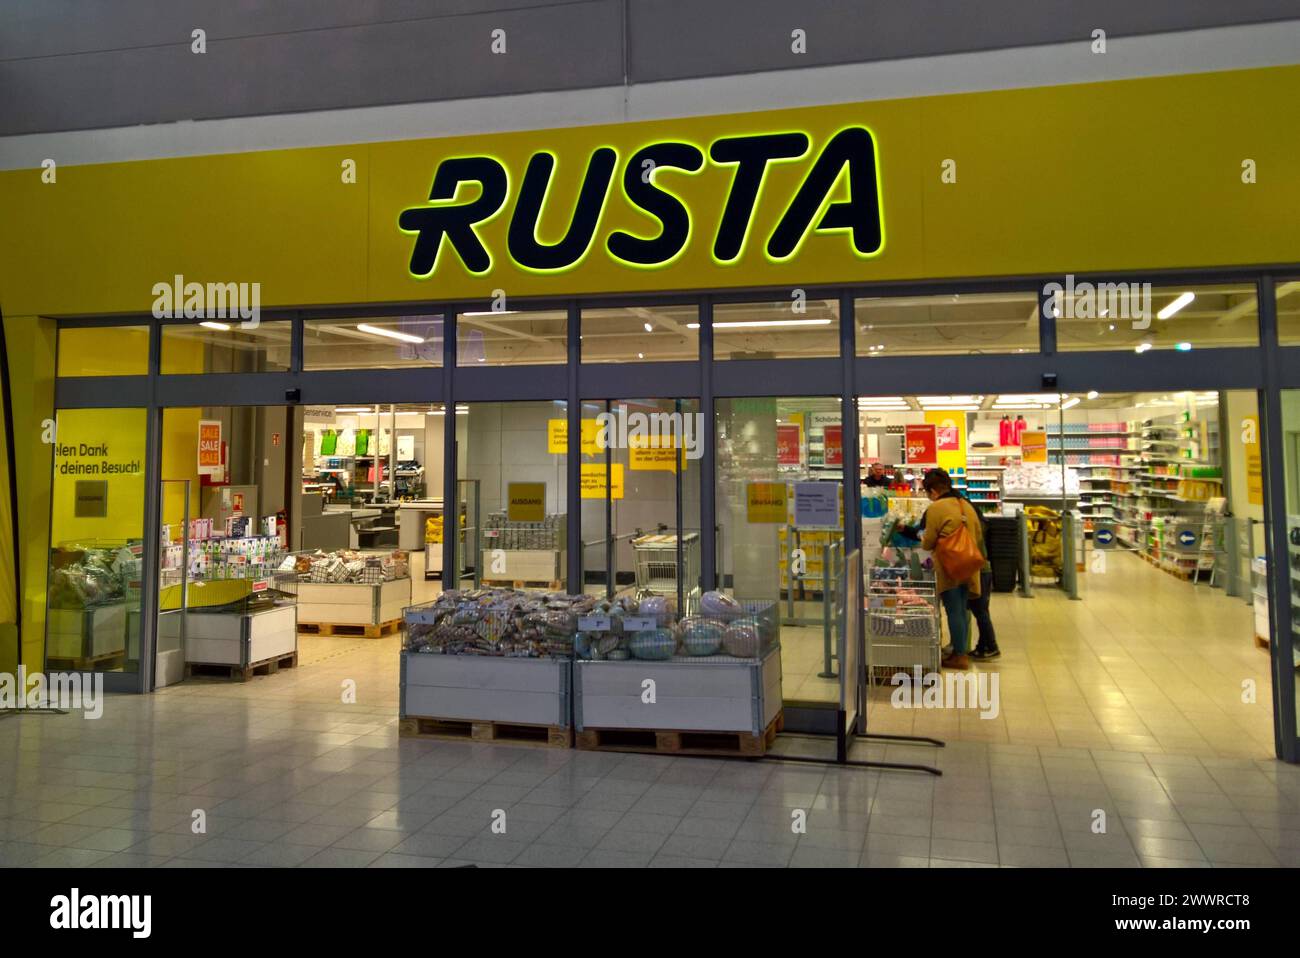 Rusta Store, Einzelhandel. Rusta ist ein schwedisches Einzelhandelsunternehmen, mit insgesamt 178 Filialen in Deutschland, Finnland, Norwegen und Schweden. Das auf Haushalts- und Freizeitartikel spezifizierte Unternehmen wurde 1986 von Anders Forsgren und Bengt-Olov Forssell im schwedischen Gävle gegründet. Heute befindet sich der Hauptsitz in Upplands Väsby, nördlich von Stockholm *** Rusta Store, retail Rusta is a Swedish retail company with a total of 178 stores in Germany, Finland, Norway and Sweden The company, which specializes in household and leisure products, was founded in 1986 by An Stock Photo